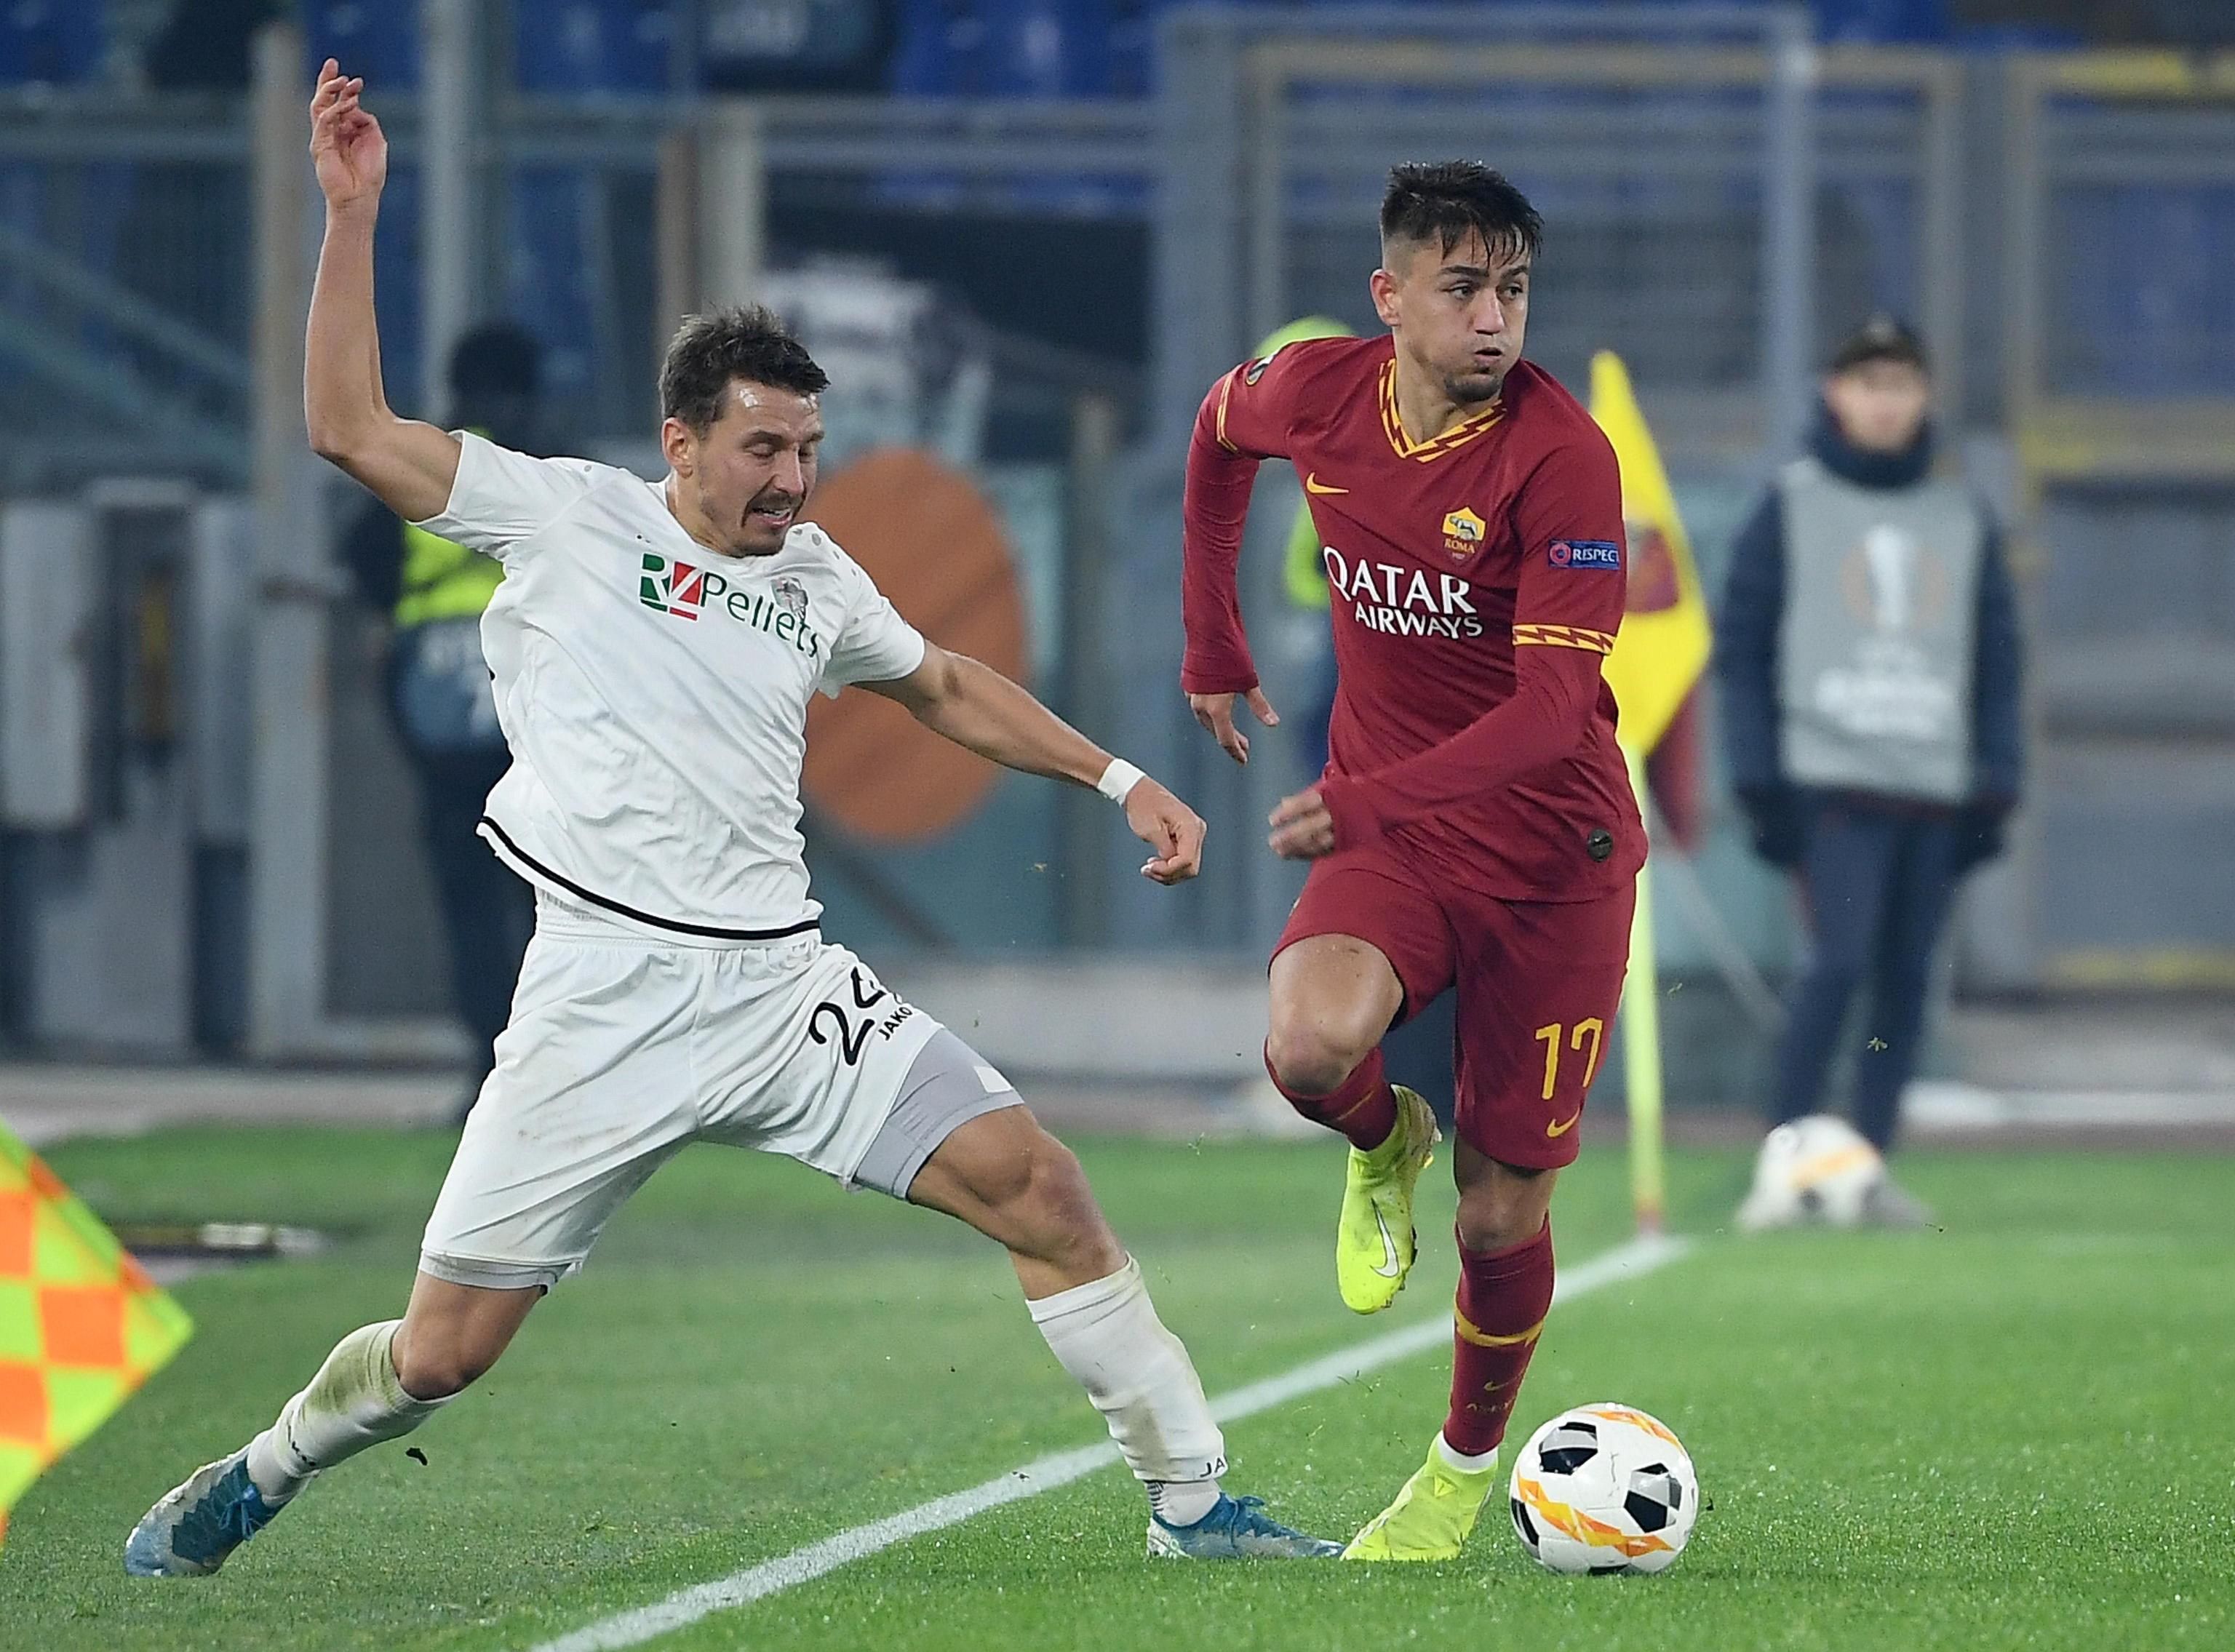 Els possibles rivals de l'Espanyol a l'Europa League: Roma i Leverkusen, els perills